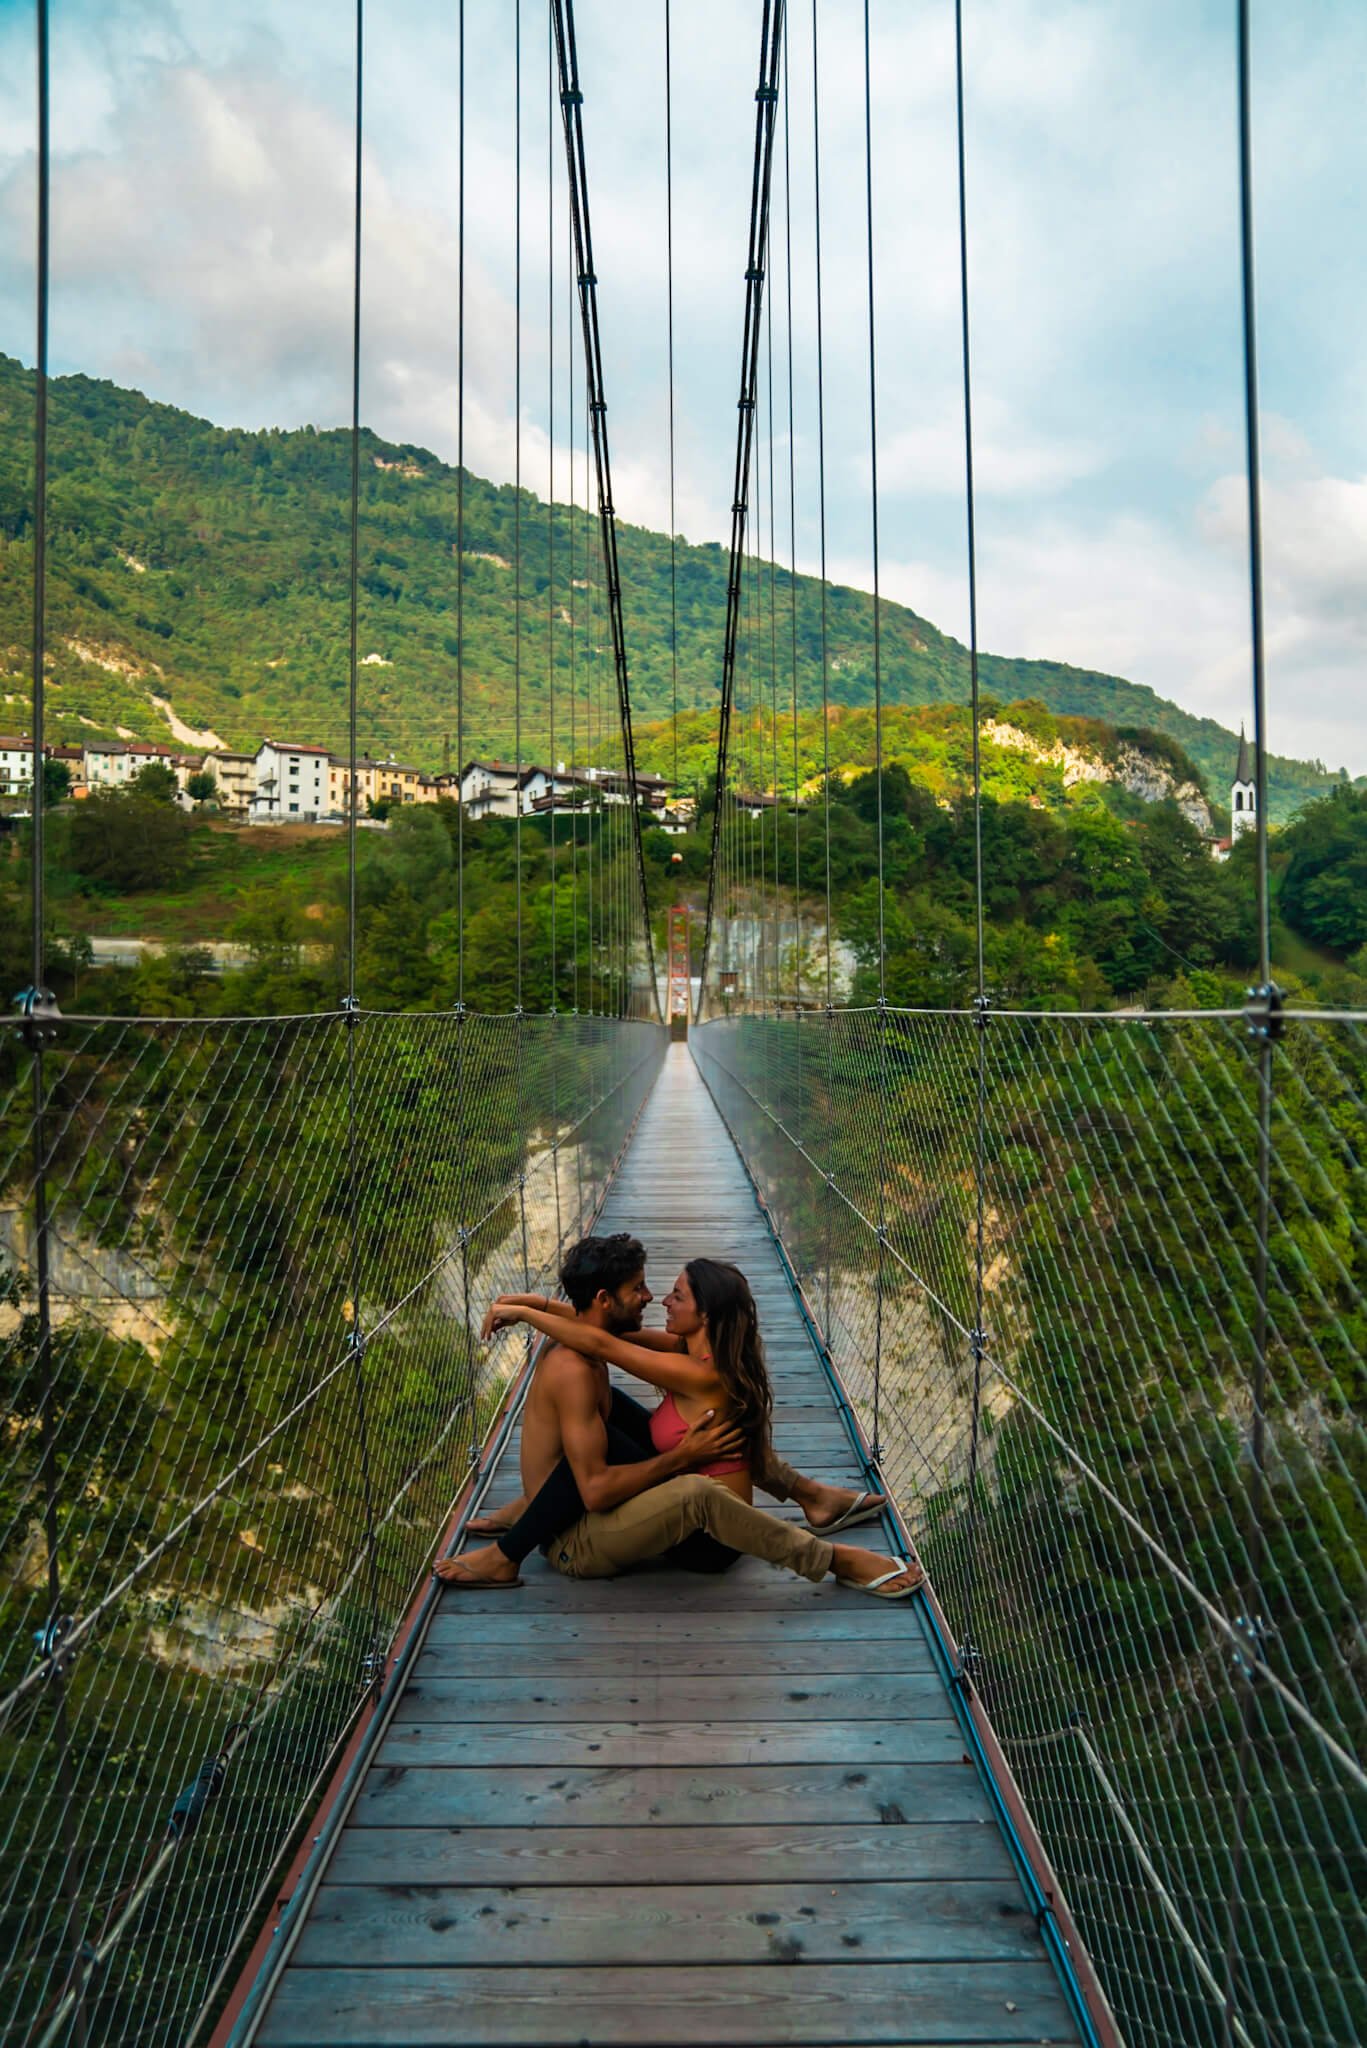 Suspension bridge in Italy